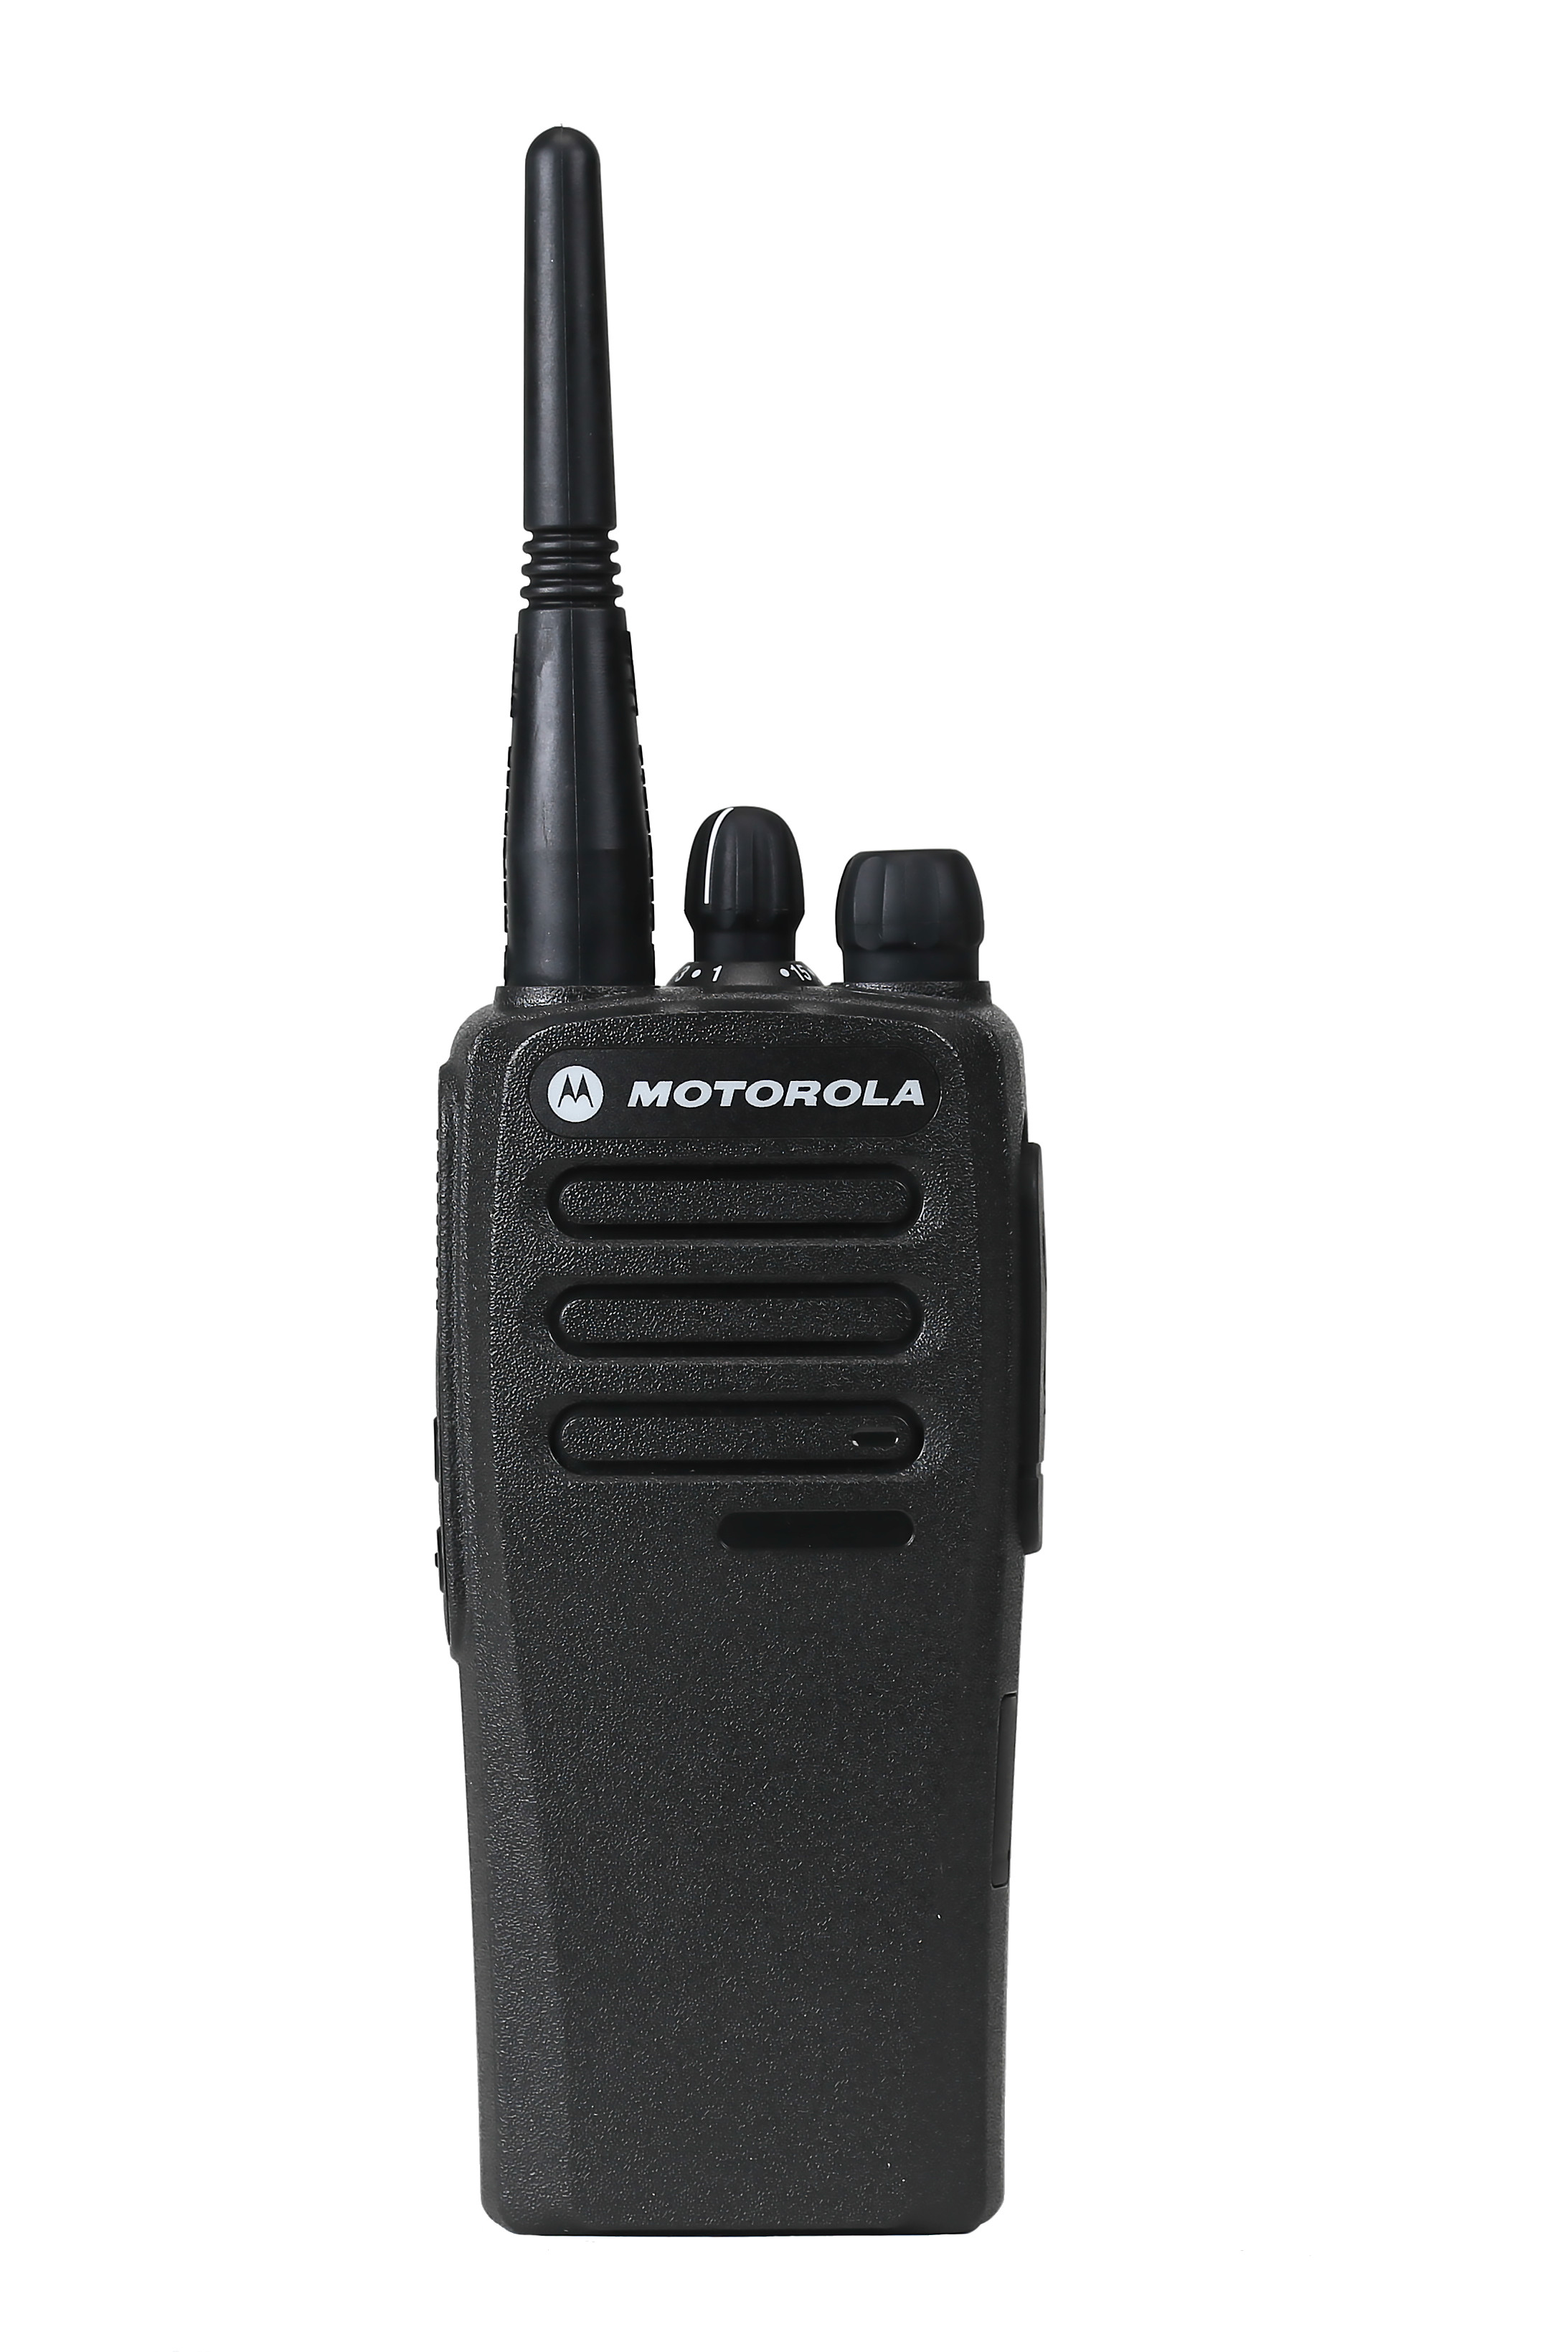 SET - Radiostanice MOTOTRBO DP1400, analogová + VHF anténa + NiMH baterie + rychlonabíječ